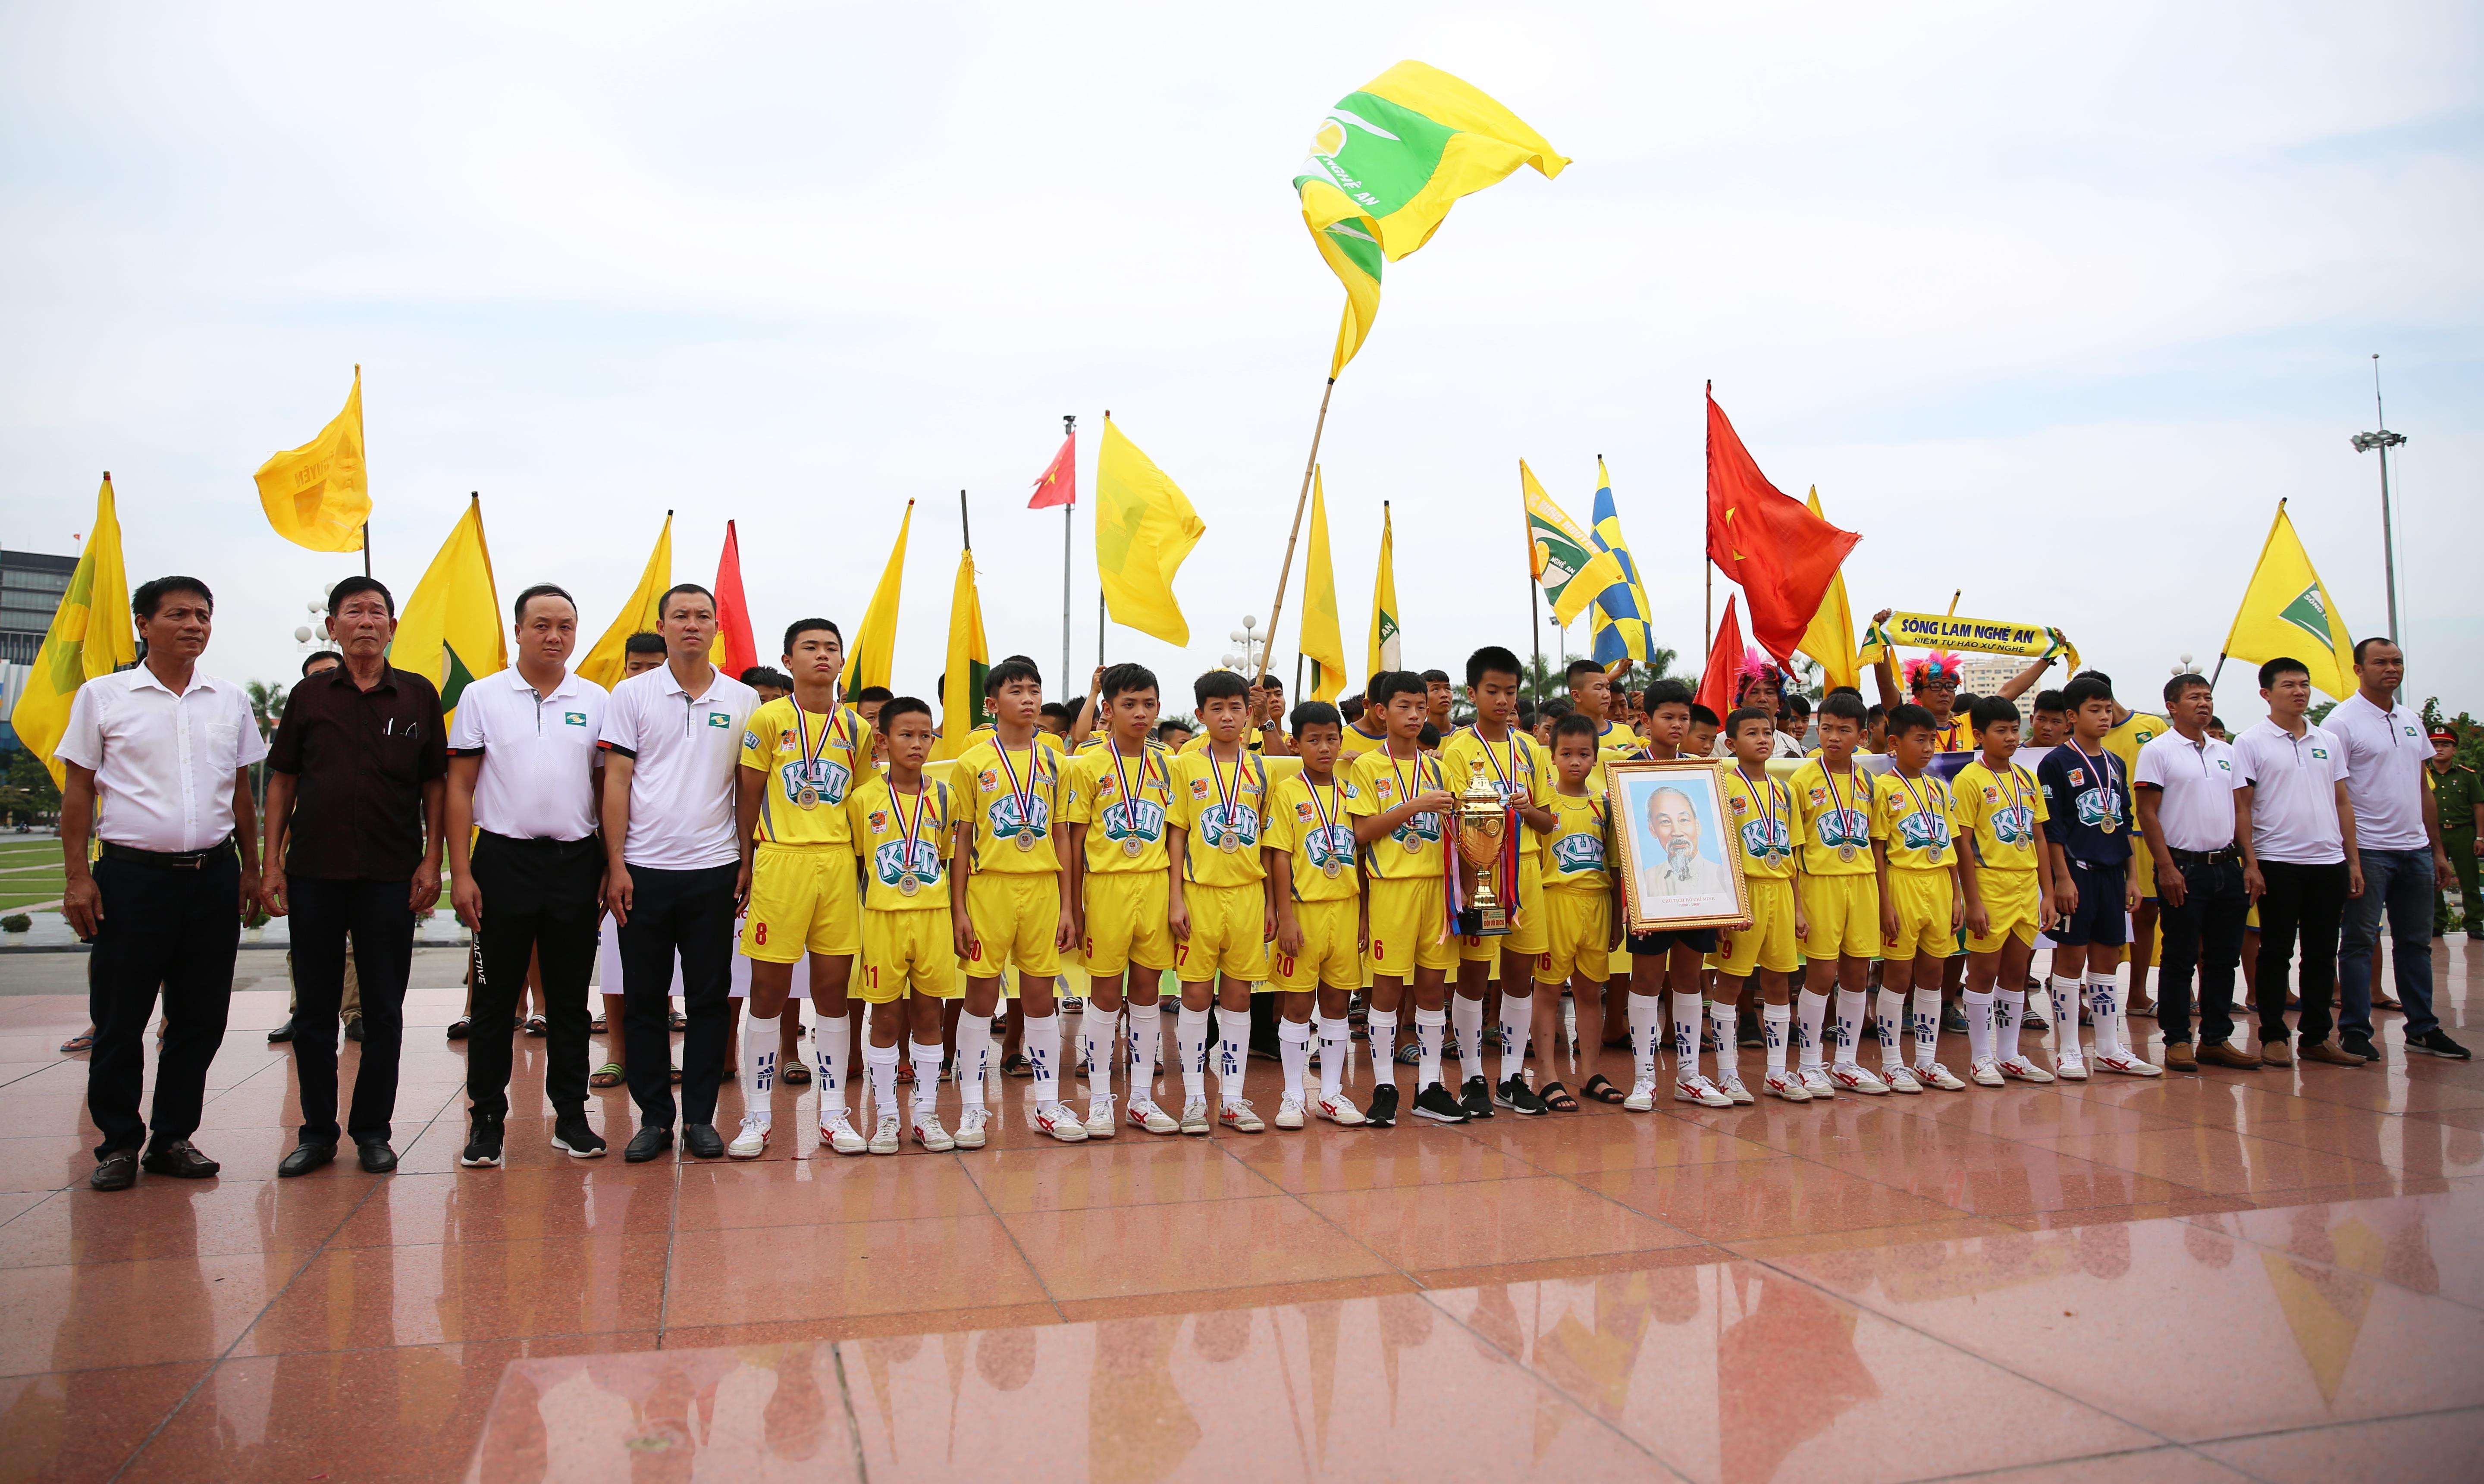 Sau buổi diễu hành để ăn mừng chức vô địch, đội U11 SLNA dâng hoa, dâng hương báo công với Bác Hồ tại Quảng trường Hồ Chí Minh. Ảnh: Đức Anh